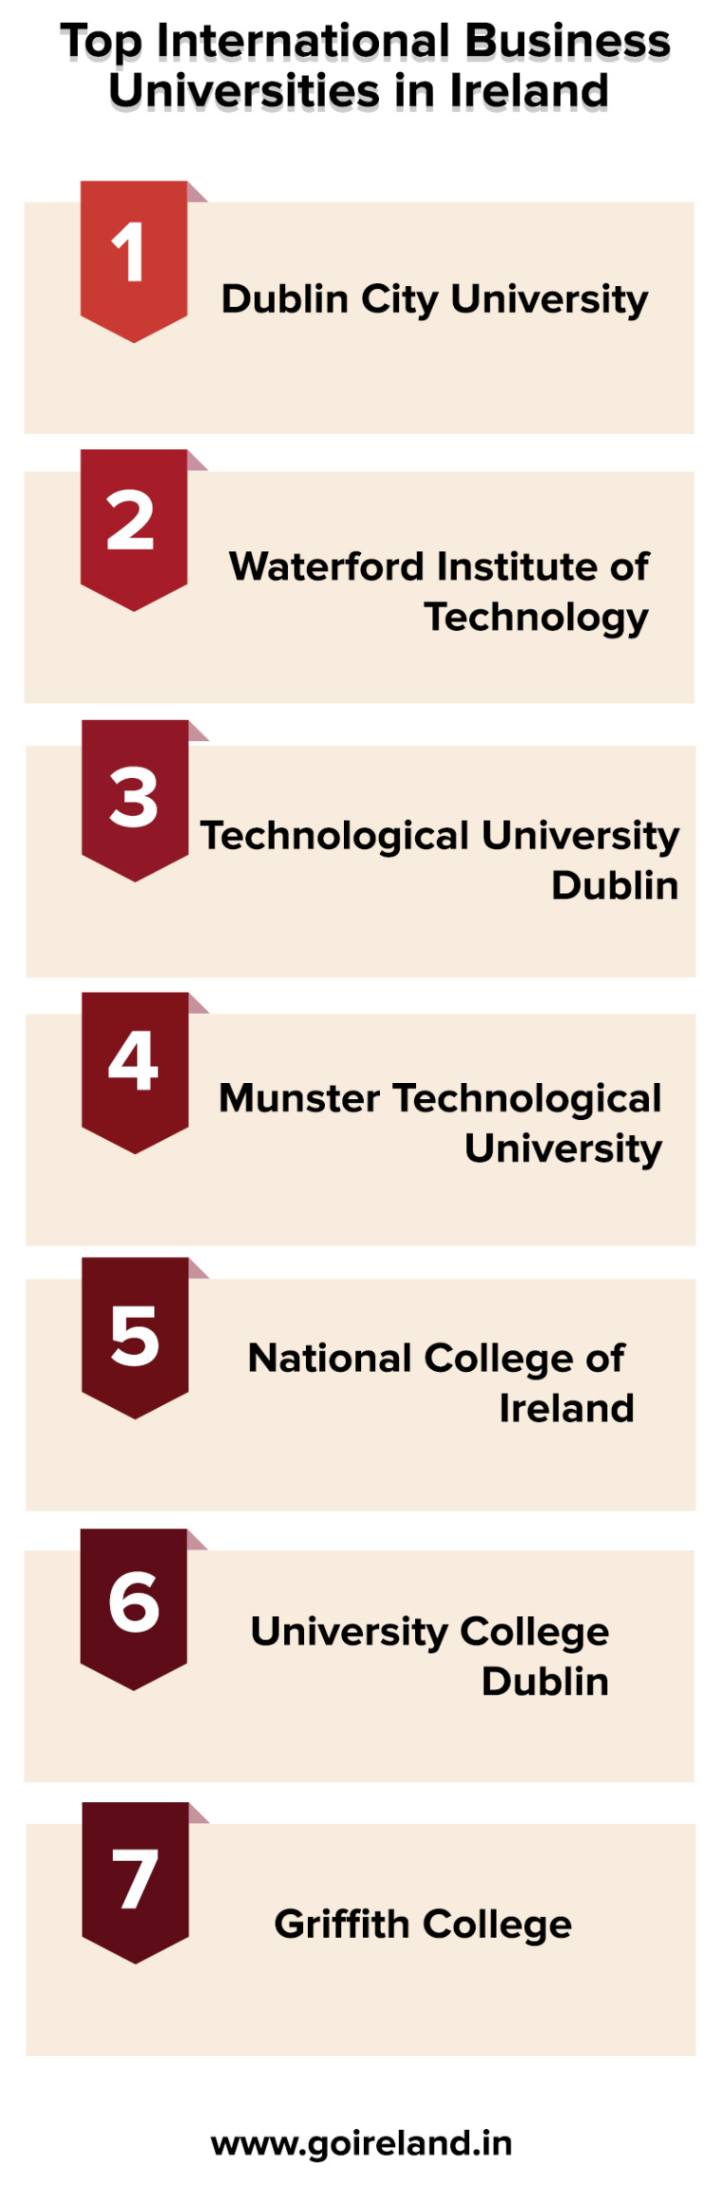 Top International Business Universities in Ireland